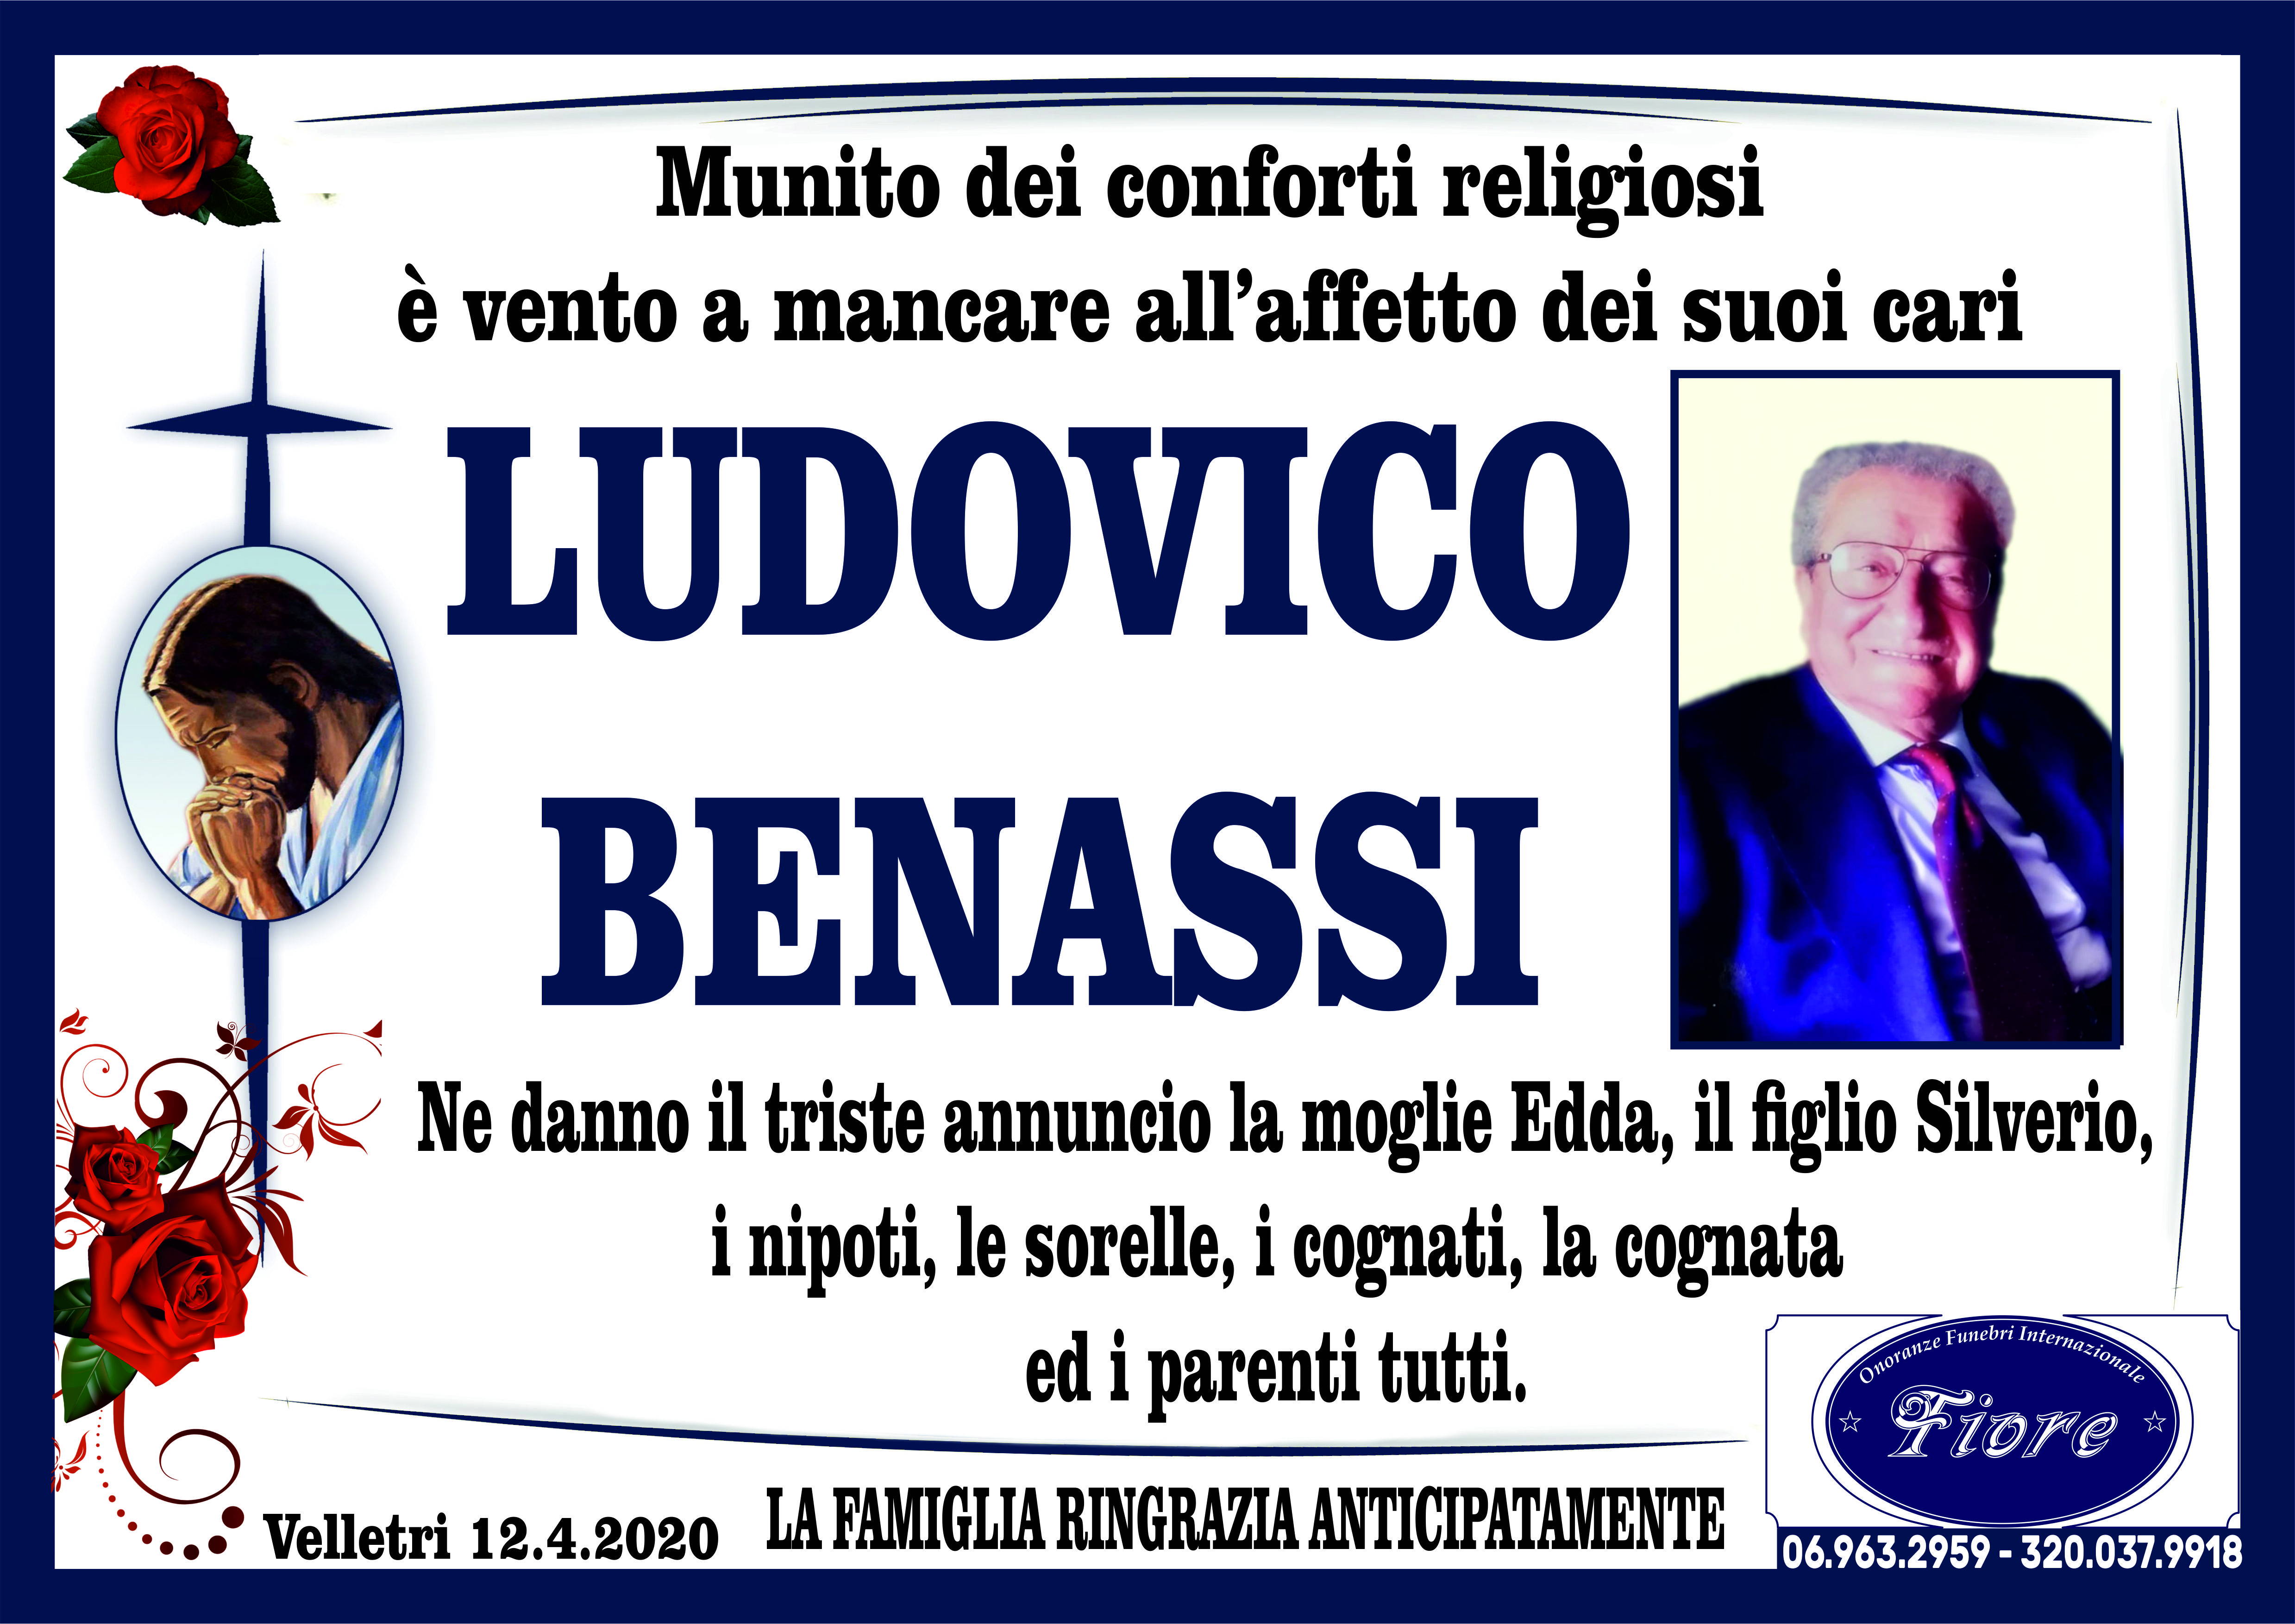 Ludovico Benassi